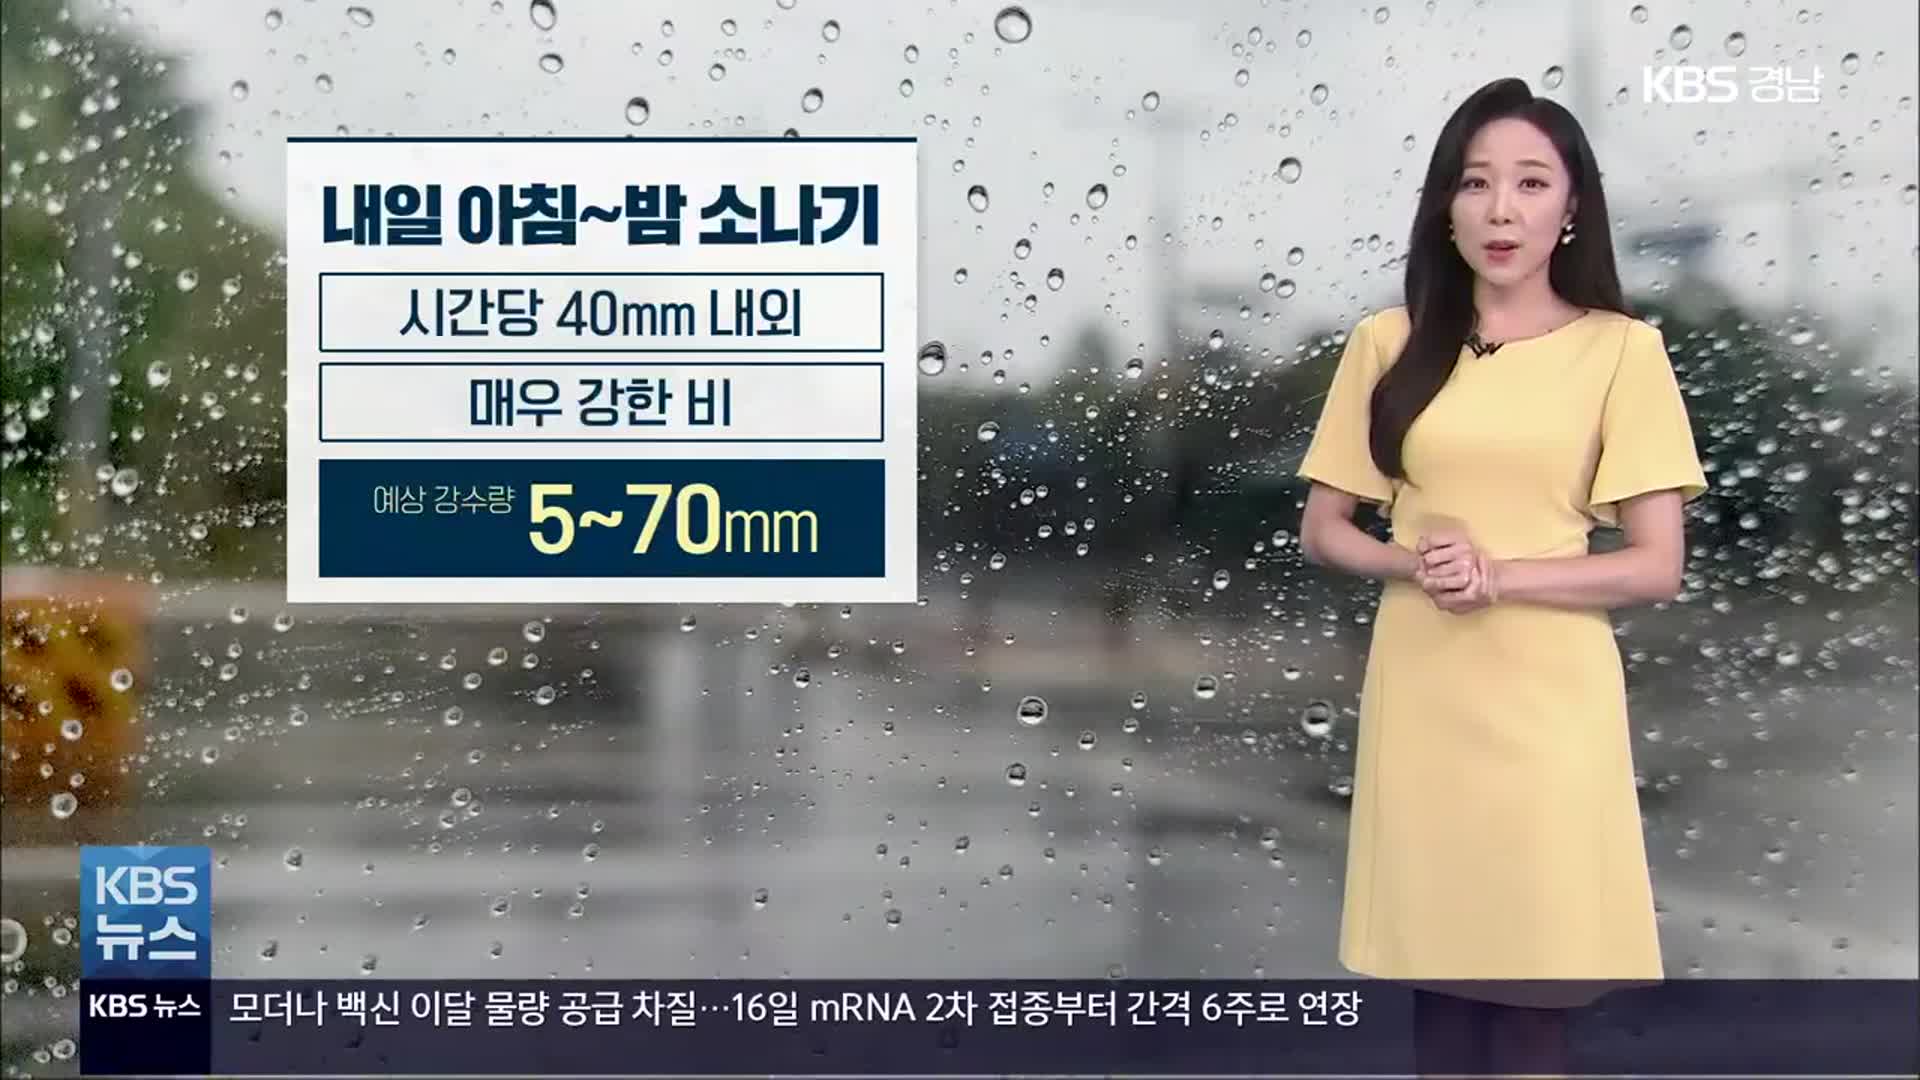 [날씨] 경남 폭염특보 완화·해제…내일 5~70mm 소나기